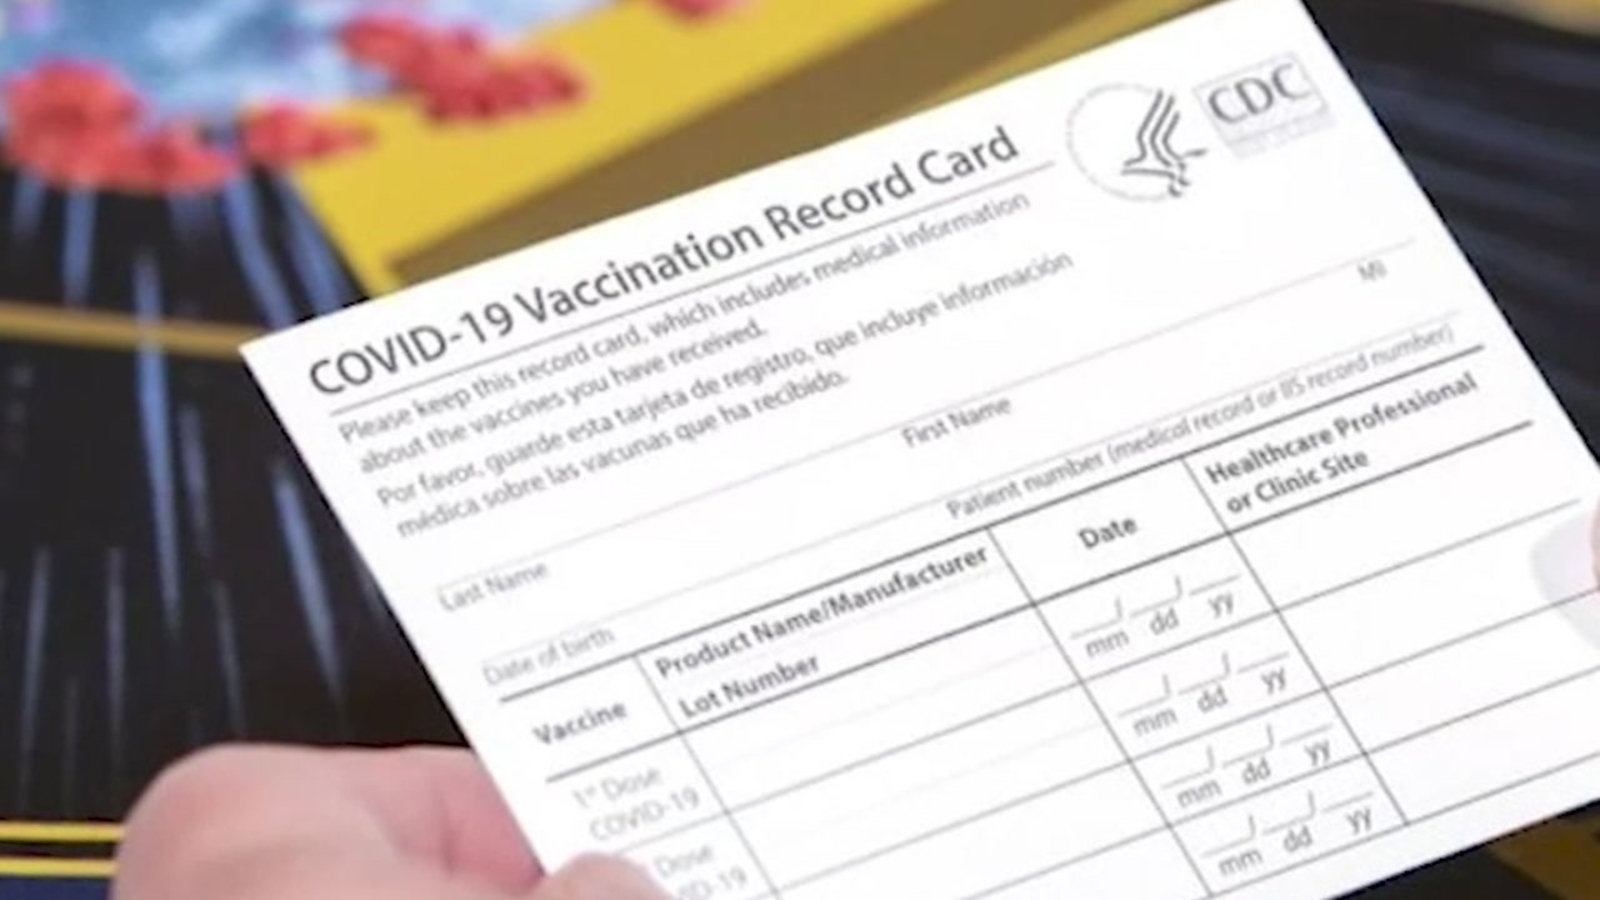 2021年越南是否允许带疫苗接种证的外国人入境？ Covid-19大流行时期的越南入境手续